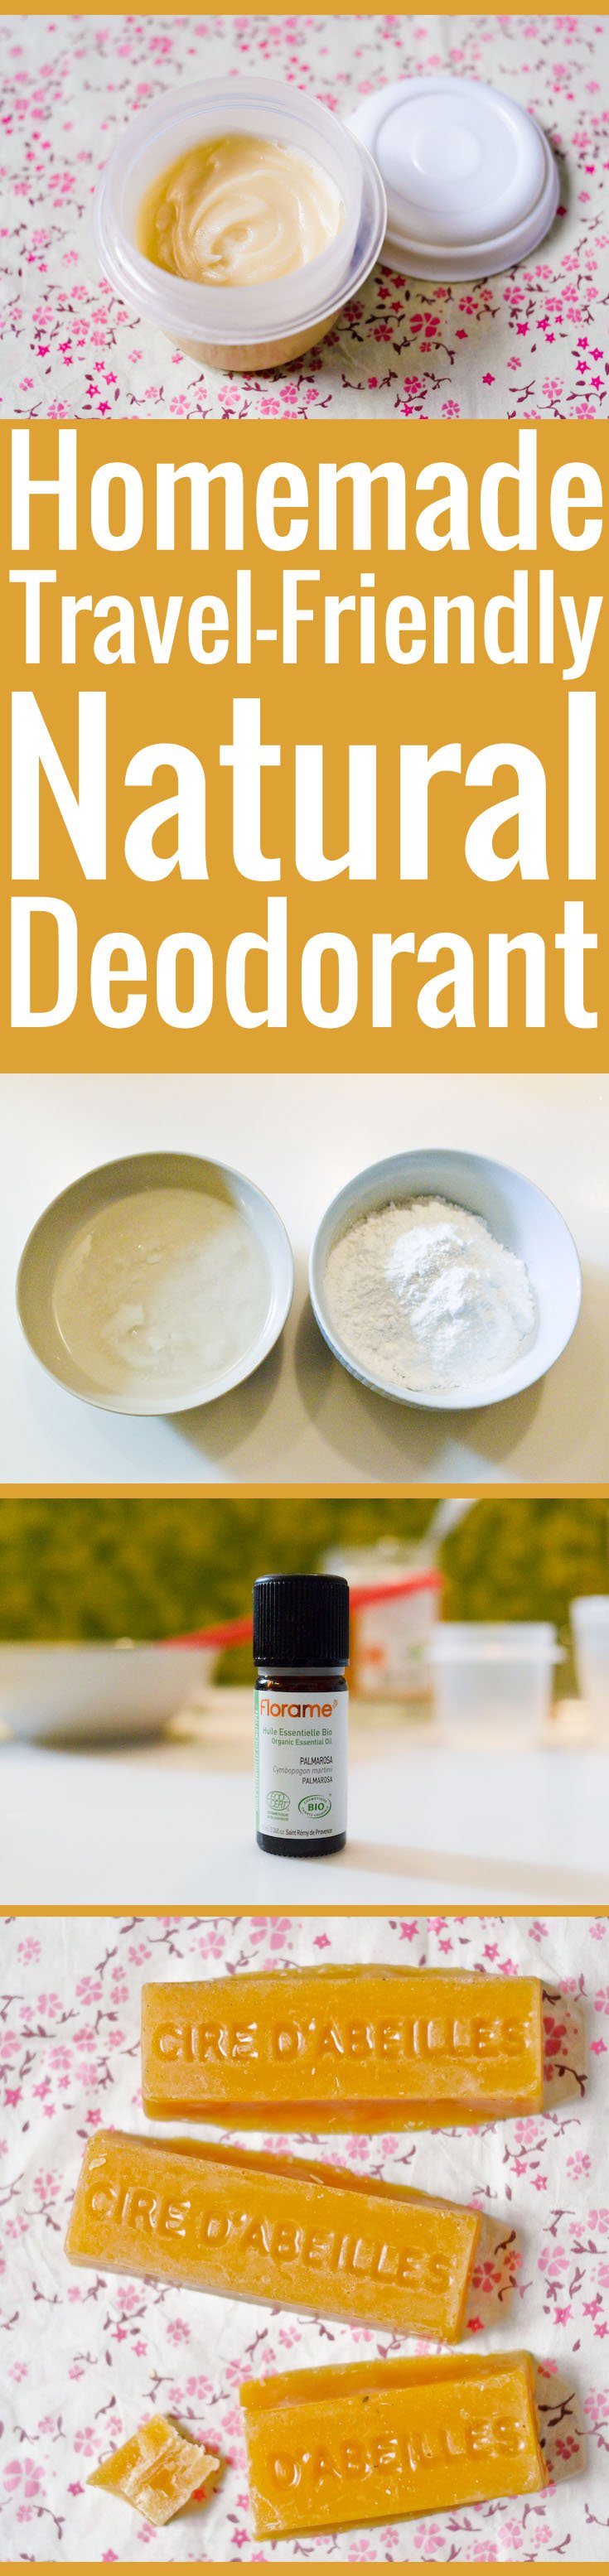 Homemade Natural Deodorant Recipe Chocolate And Zucchini